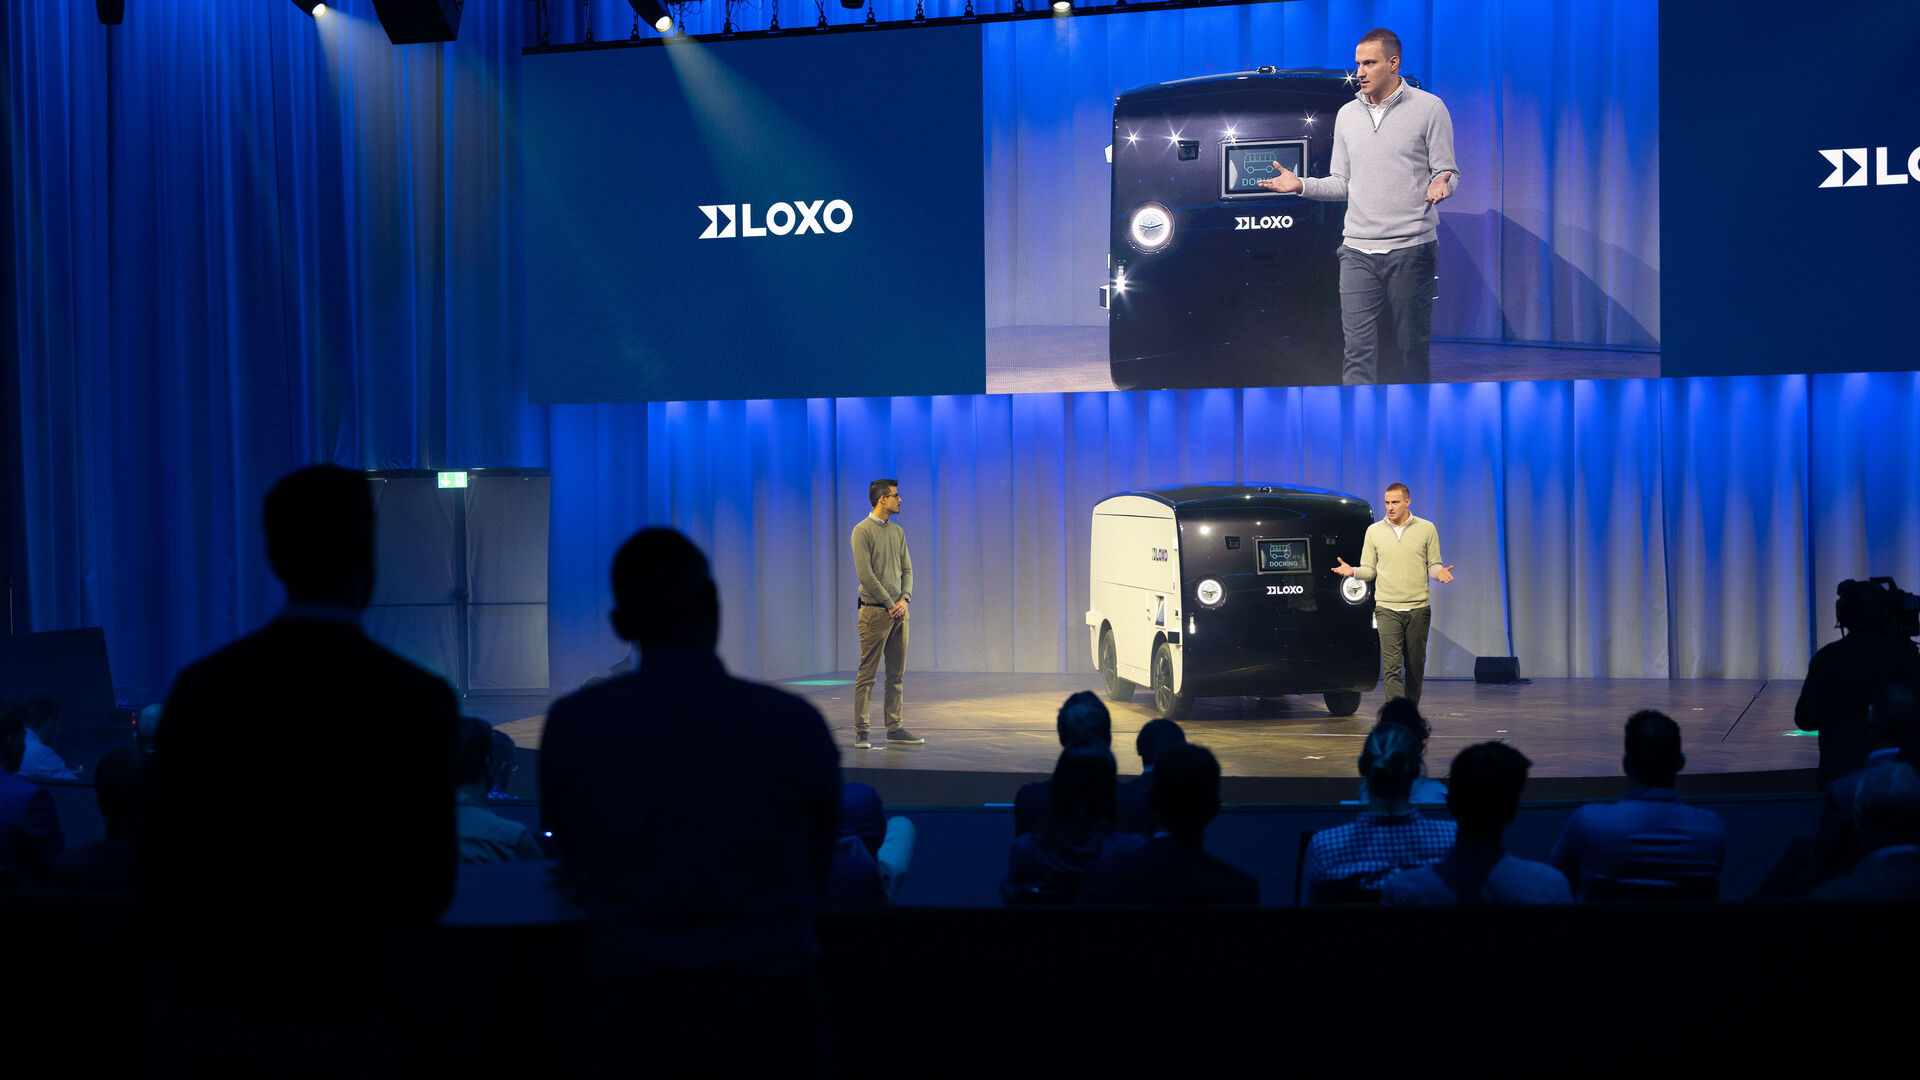 LOXO: Alpha-ն ինքնակառավարվող ֆուրգոն է, որն ամբողջությամբ արտադրվել է Շվեյցարիայում և ներկայացվել է 6 թվականի դեկտեմբերի 2022-ին Բեռնի Kursaal-ում, LOXO նորաստեղծ ընկերության մամուլի ասուլիսի ժամանակ: